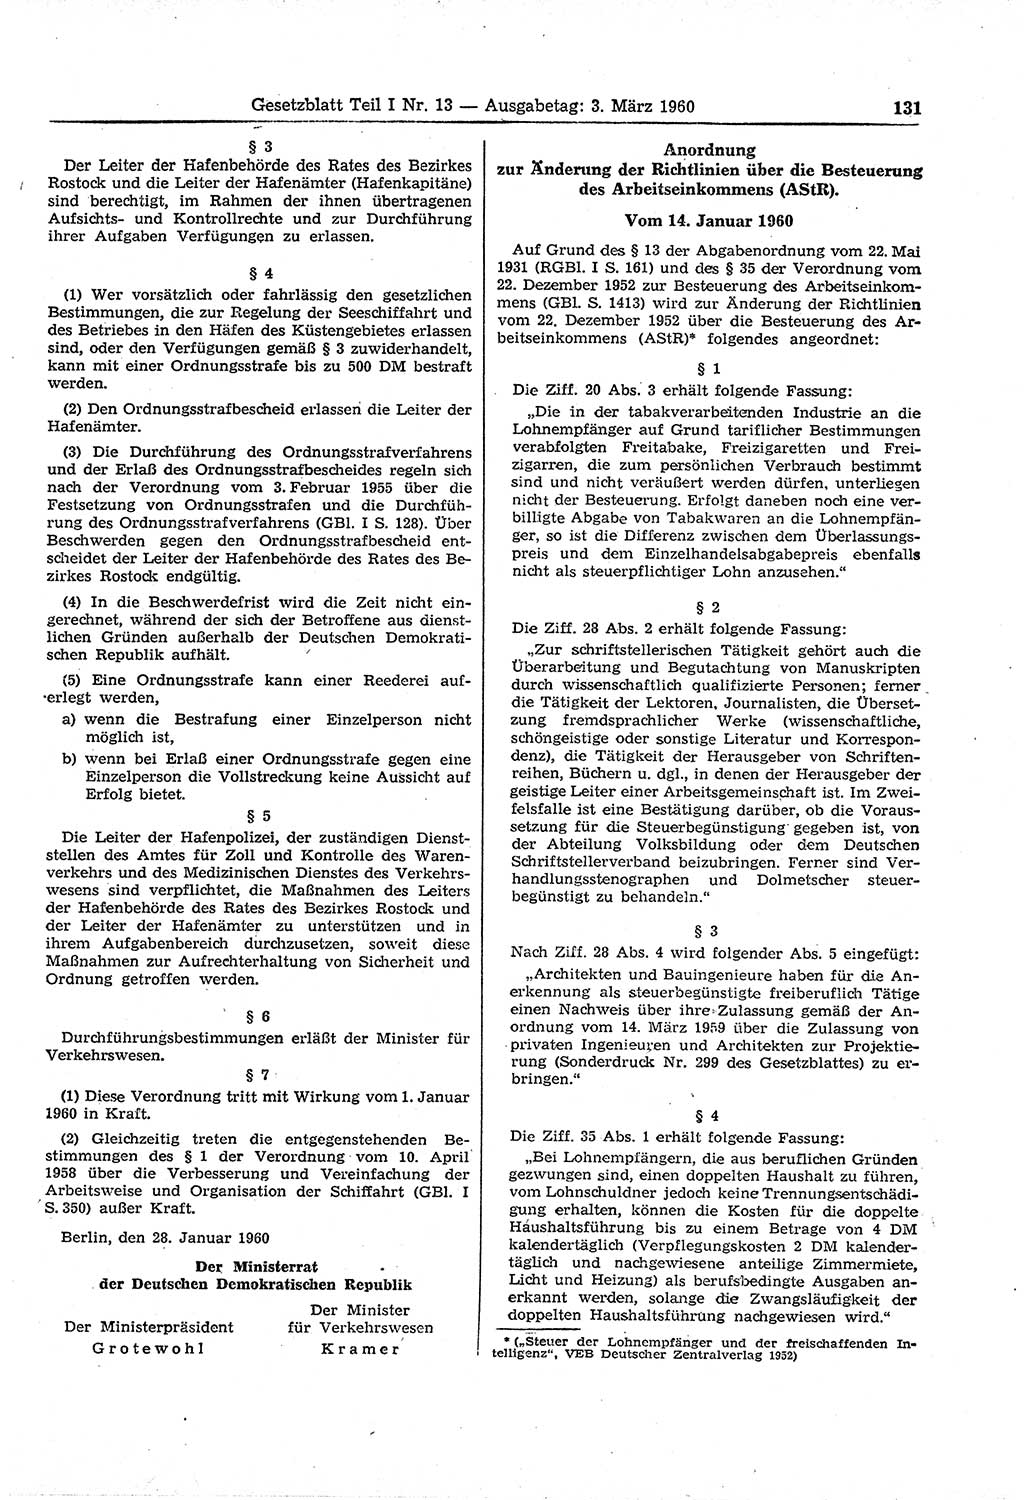 Gesetzblatt (GBl.) der Deutschen Demokratischen Republik (DDR) Teil Ⅰ 1960, Seite 131 (GBl. DDR Ⅰ 1960, S. 131)